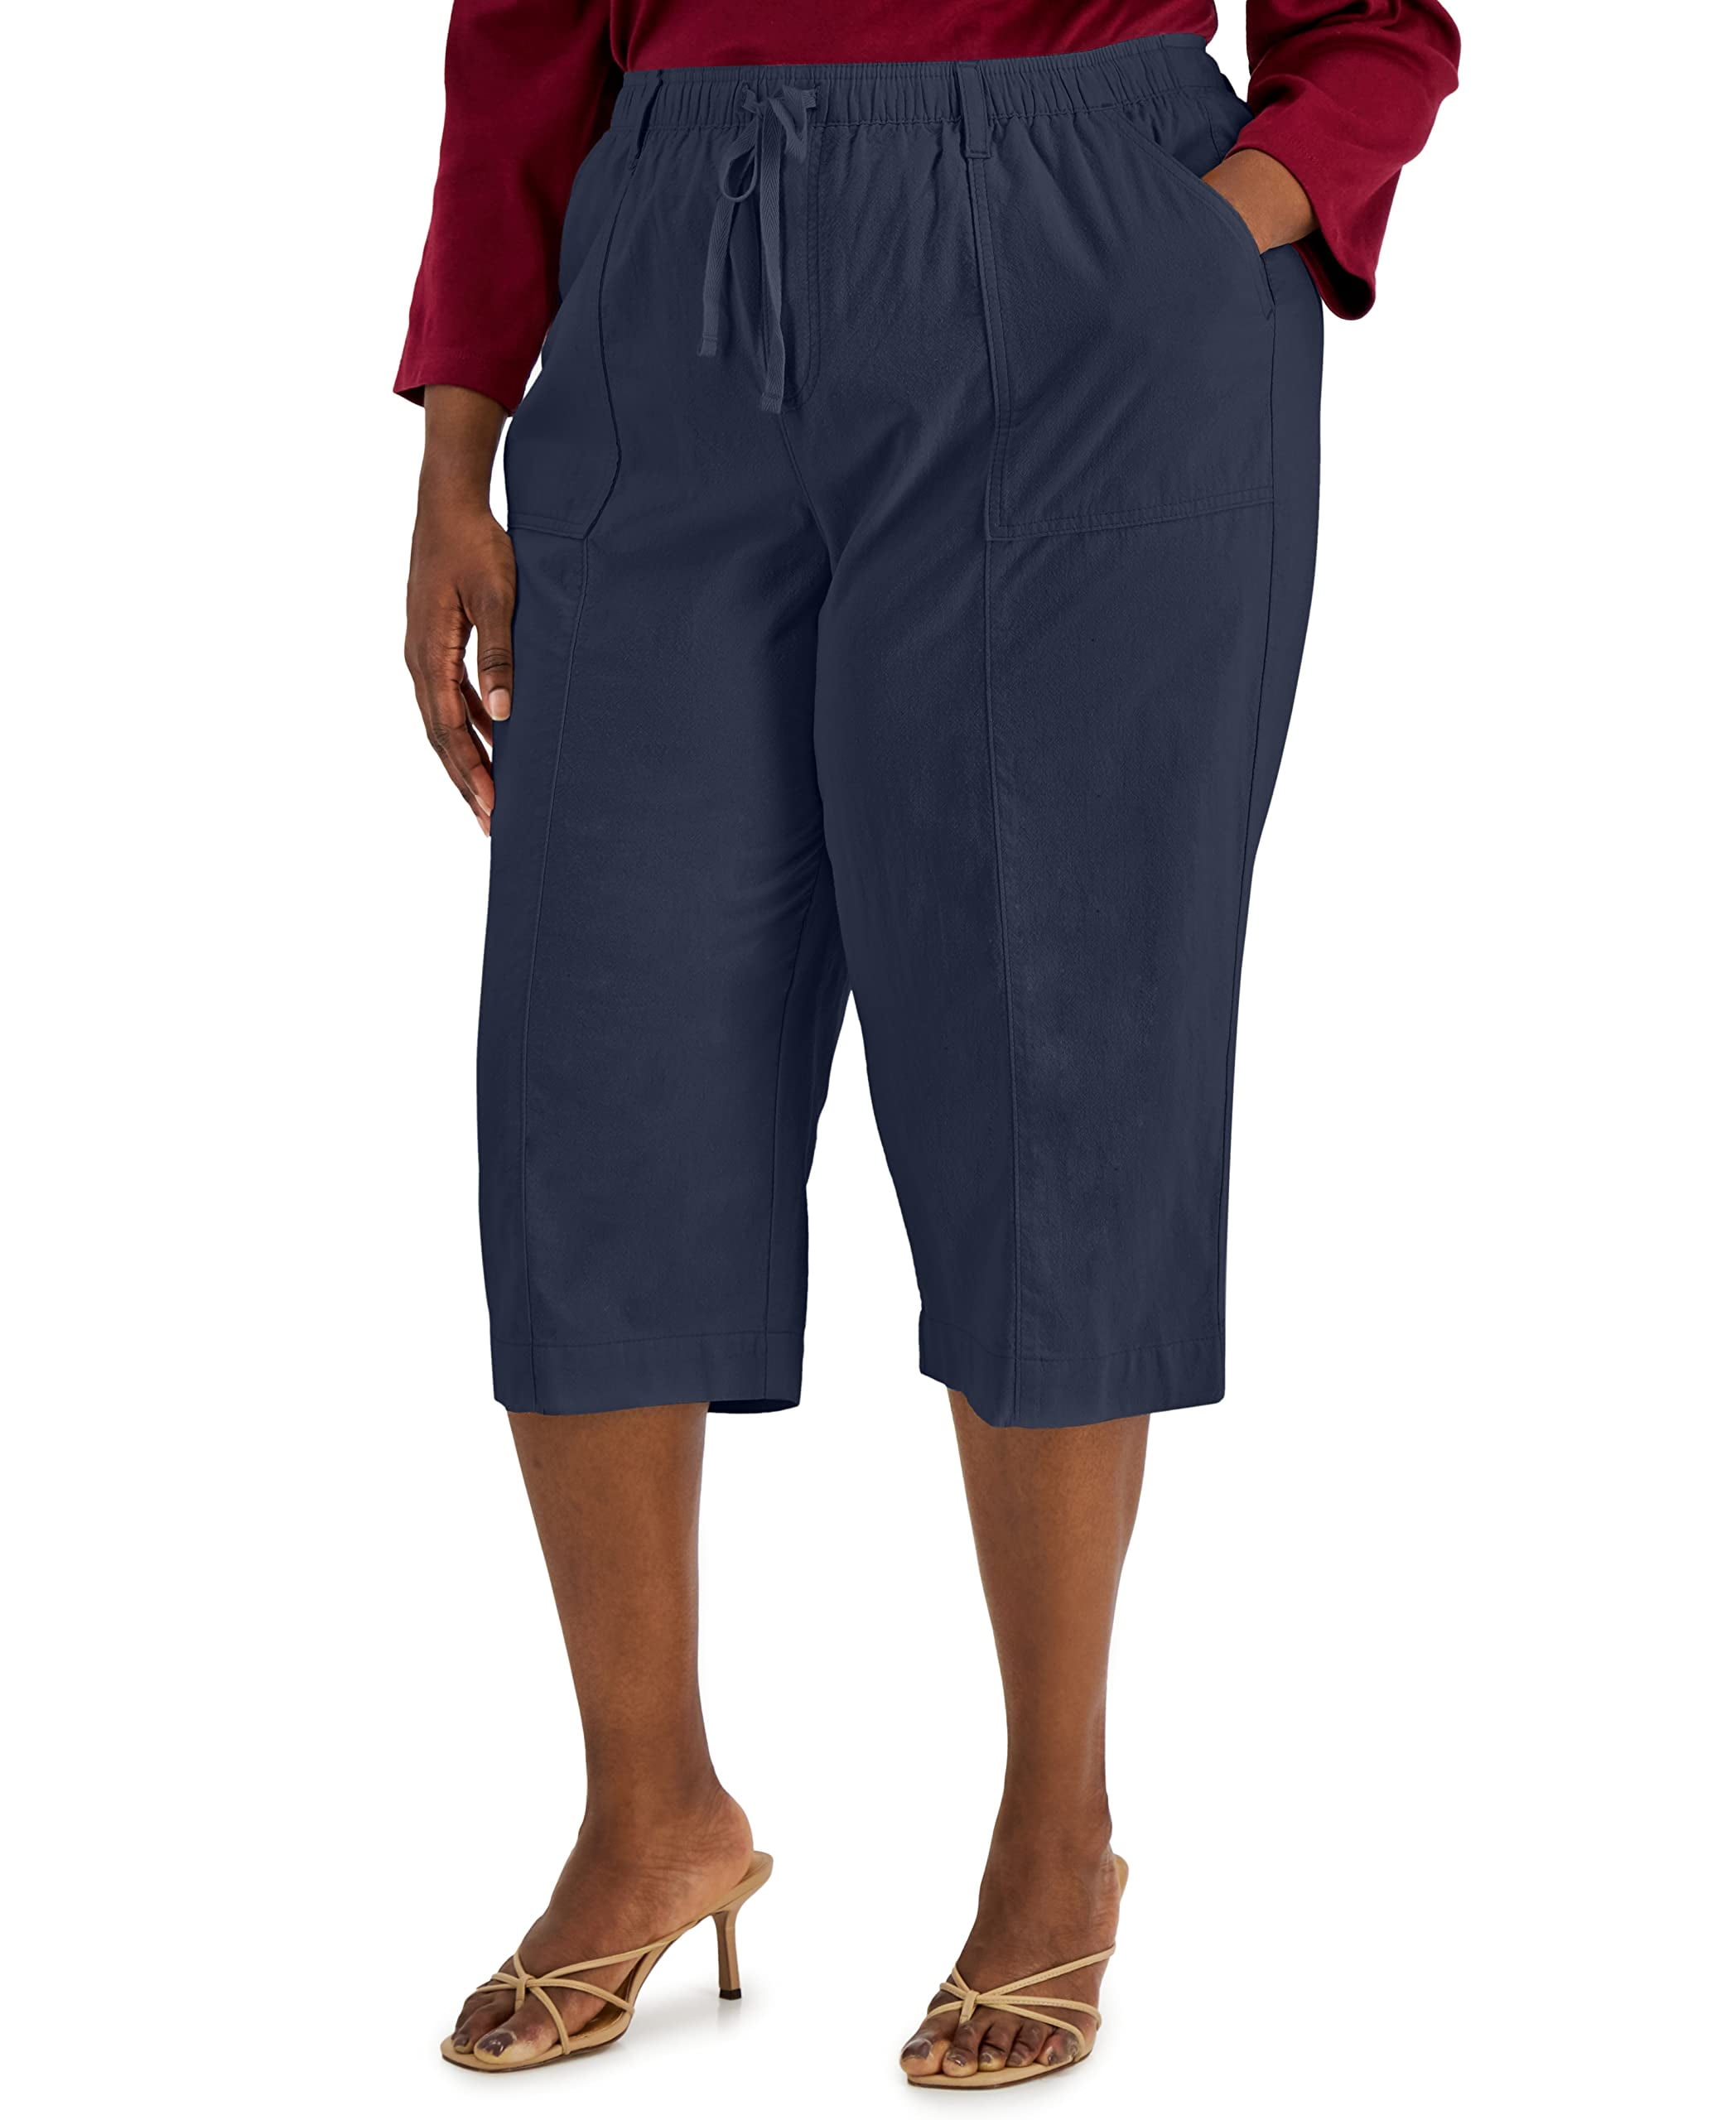 KAREN SCOTT Womens PLUS Size Stretch Capri Pull On Pants Tummy